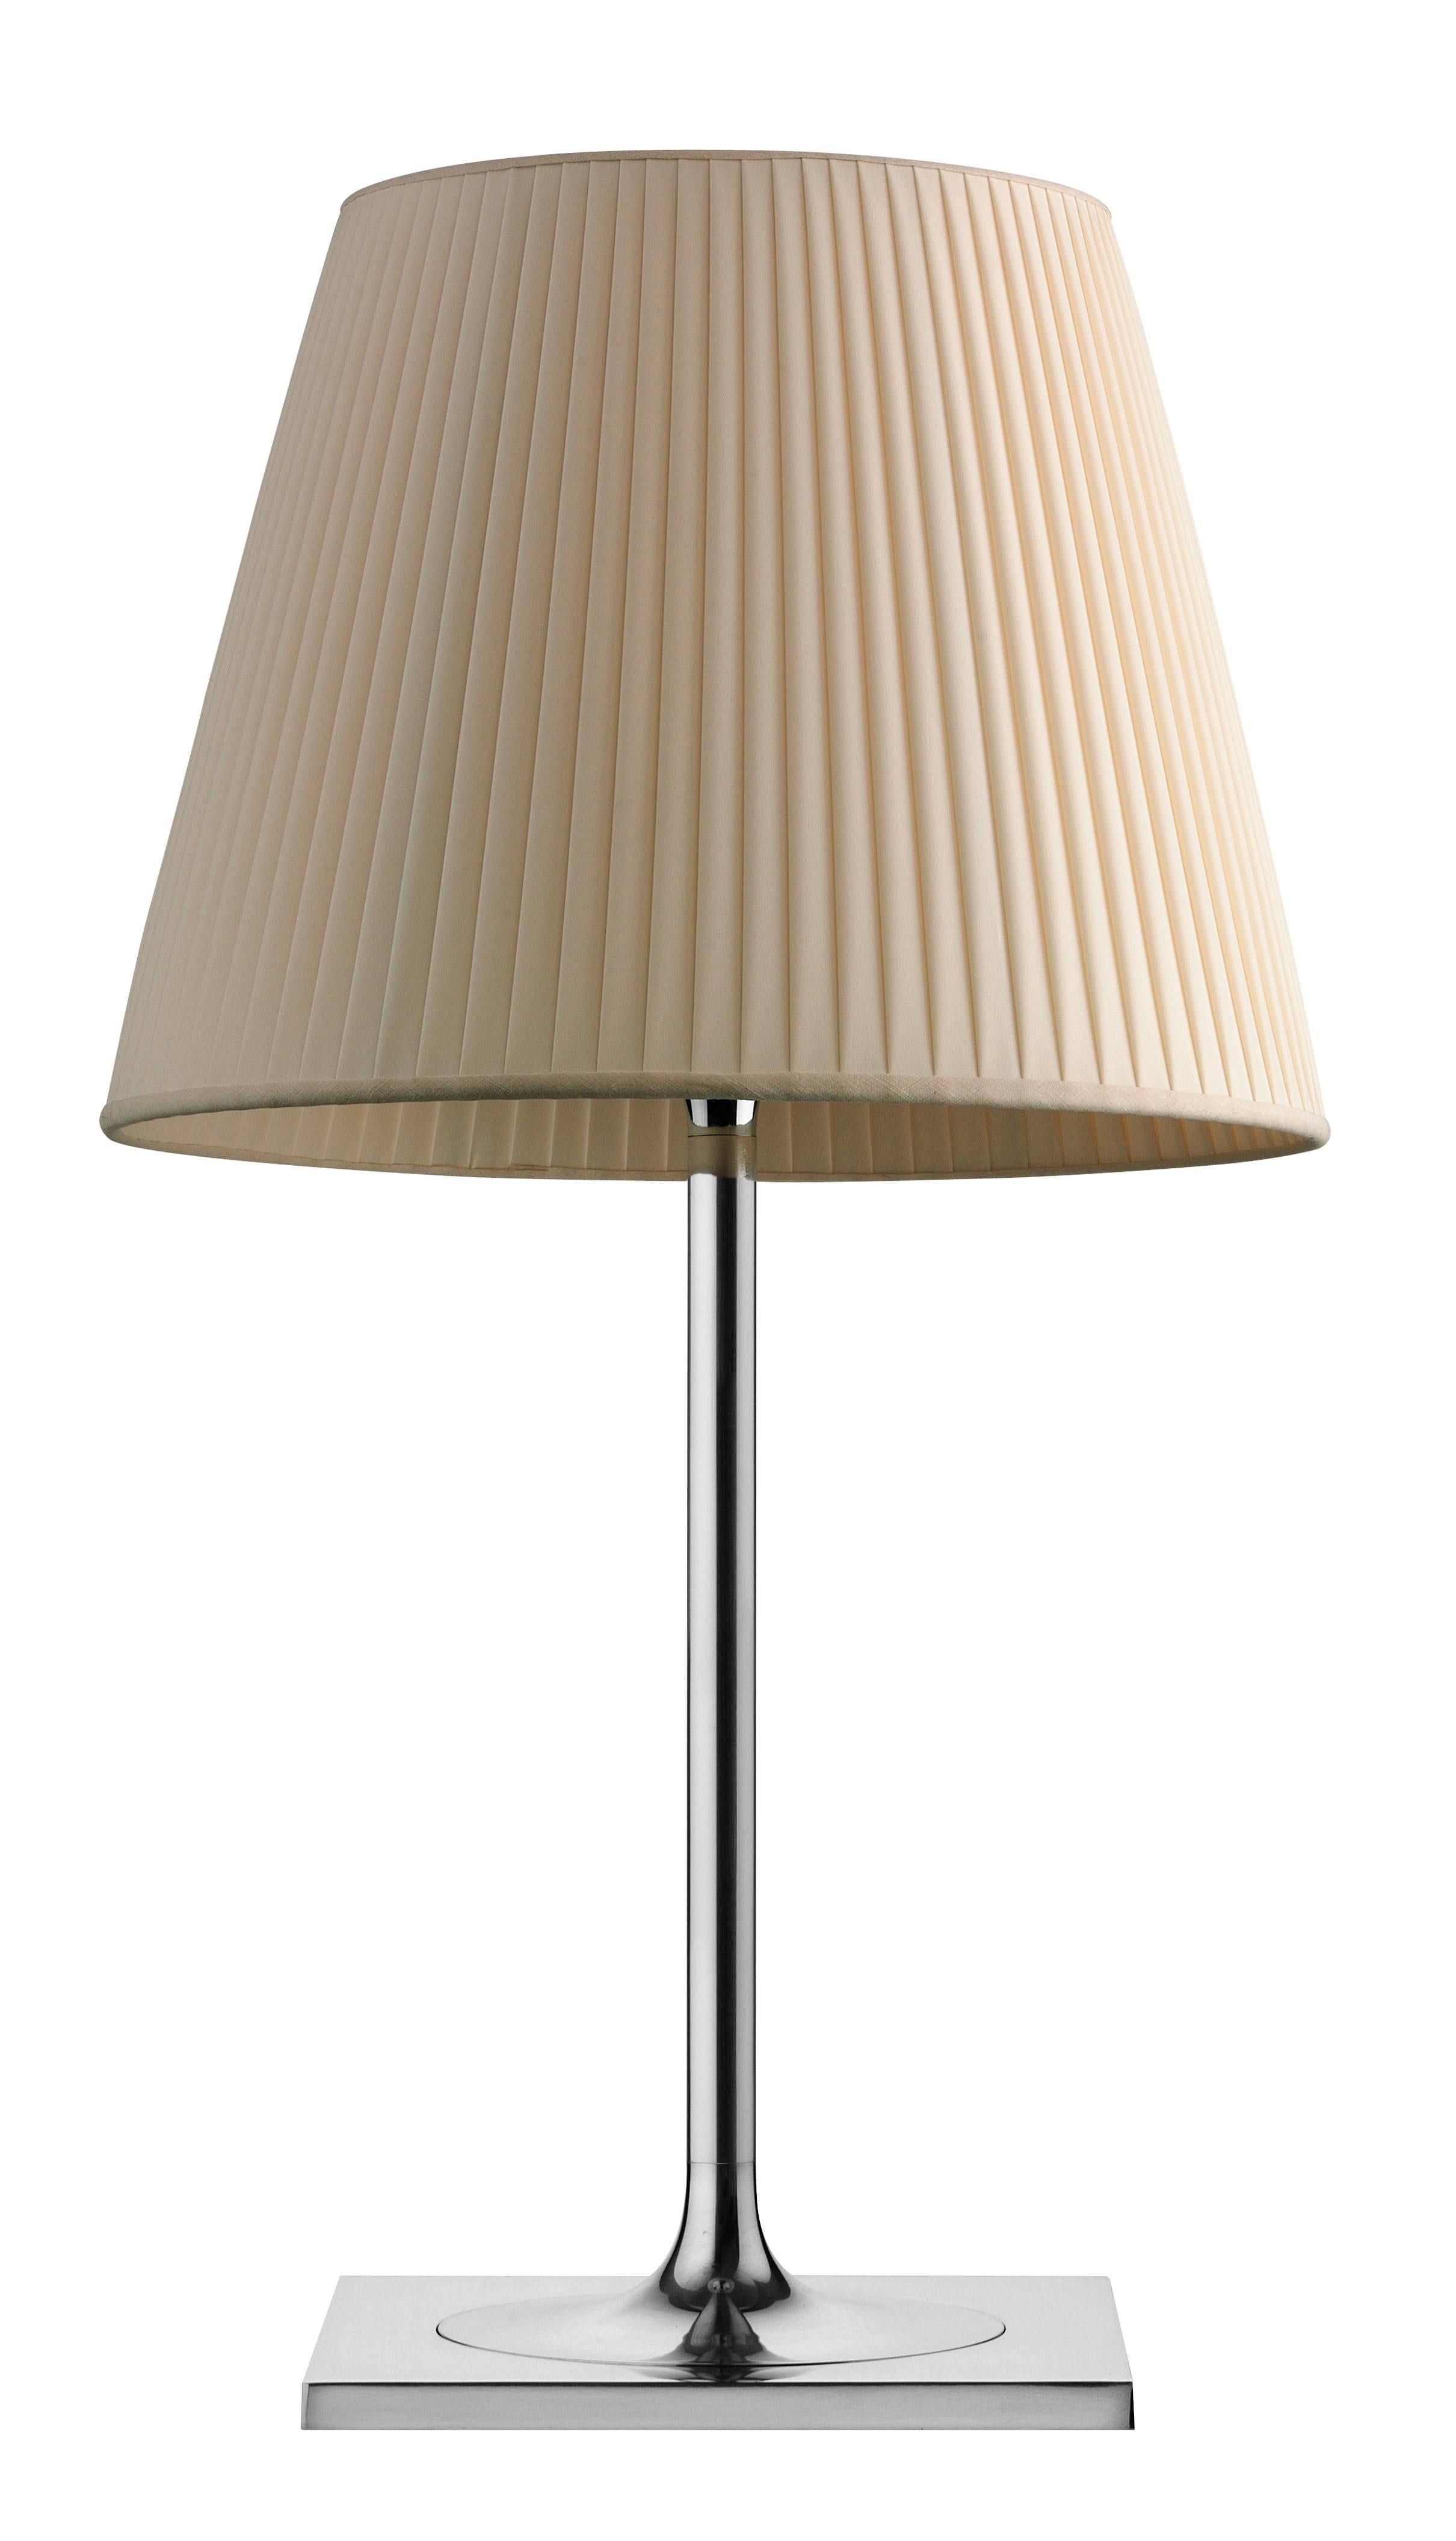 Membre de la famille des produits Ktribe, cette lampe de table inspirante fournit une lumière diffuse à travers un diffuseur transparent qui déplace gracieusement le regard vers le haut. La base, la tige et le support du diffuseur sont en alliage de